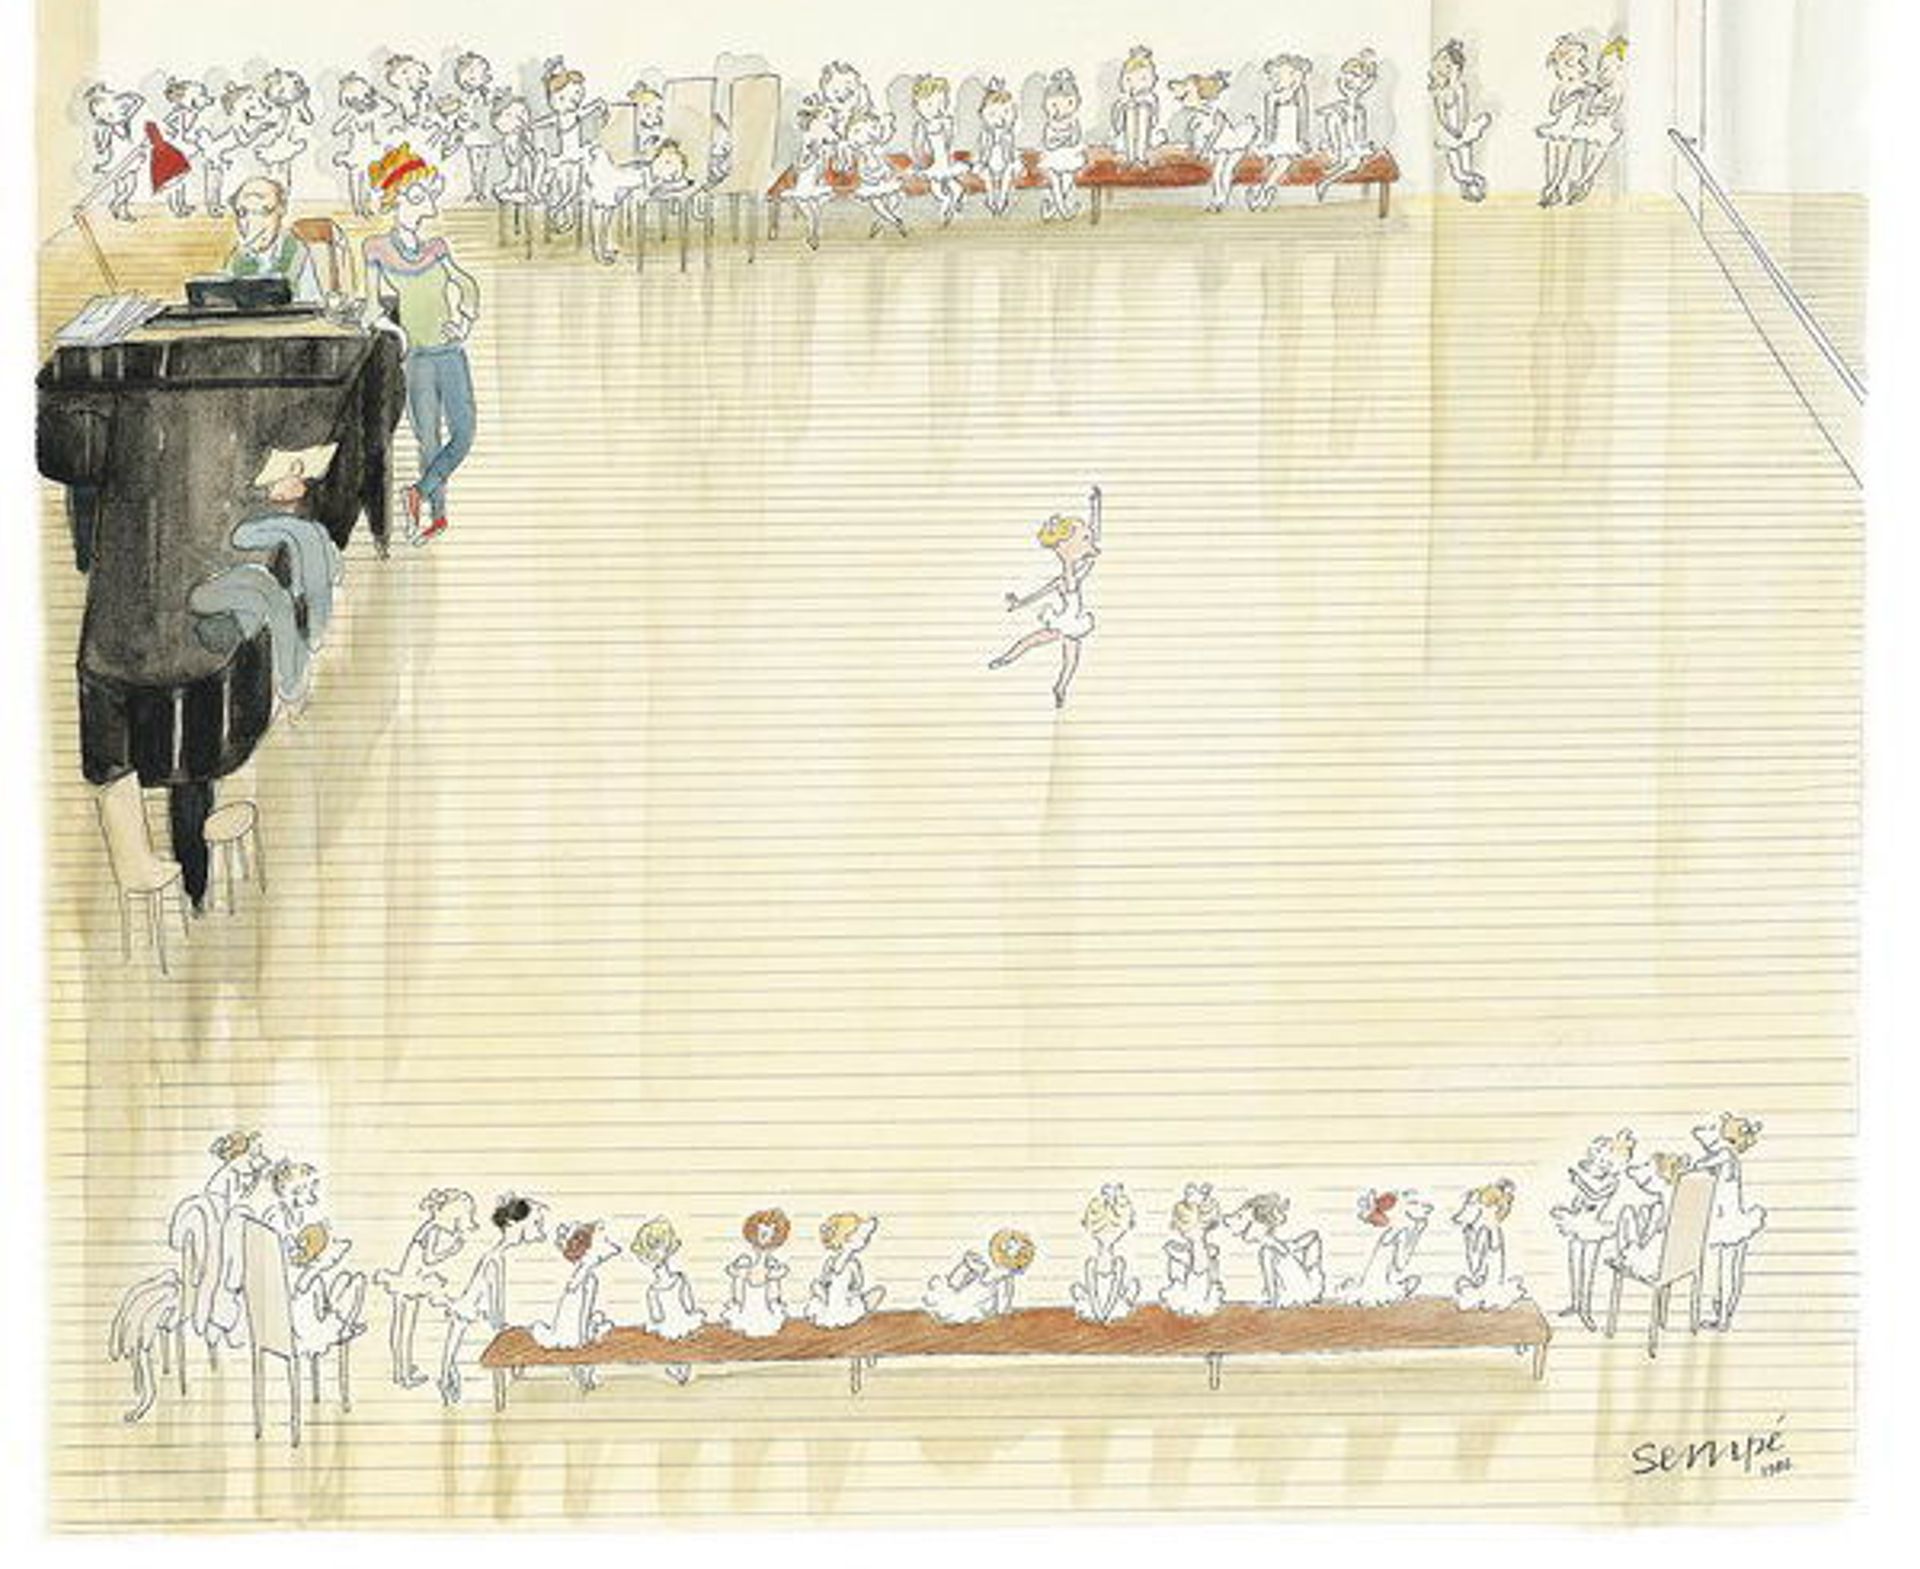 Sempé, dessin réalisé pour la couverture du New Yorker. © J.-J. Sempé, Sempé à New York, Éditions Denoël/Éditions Martine Gossieaux

